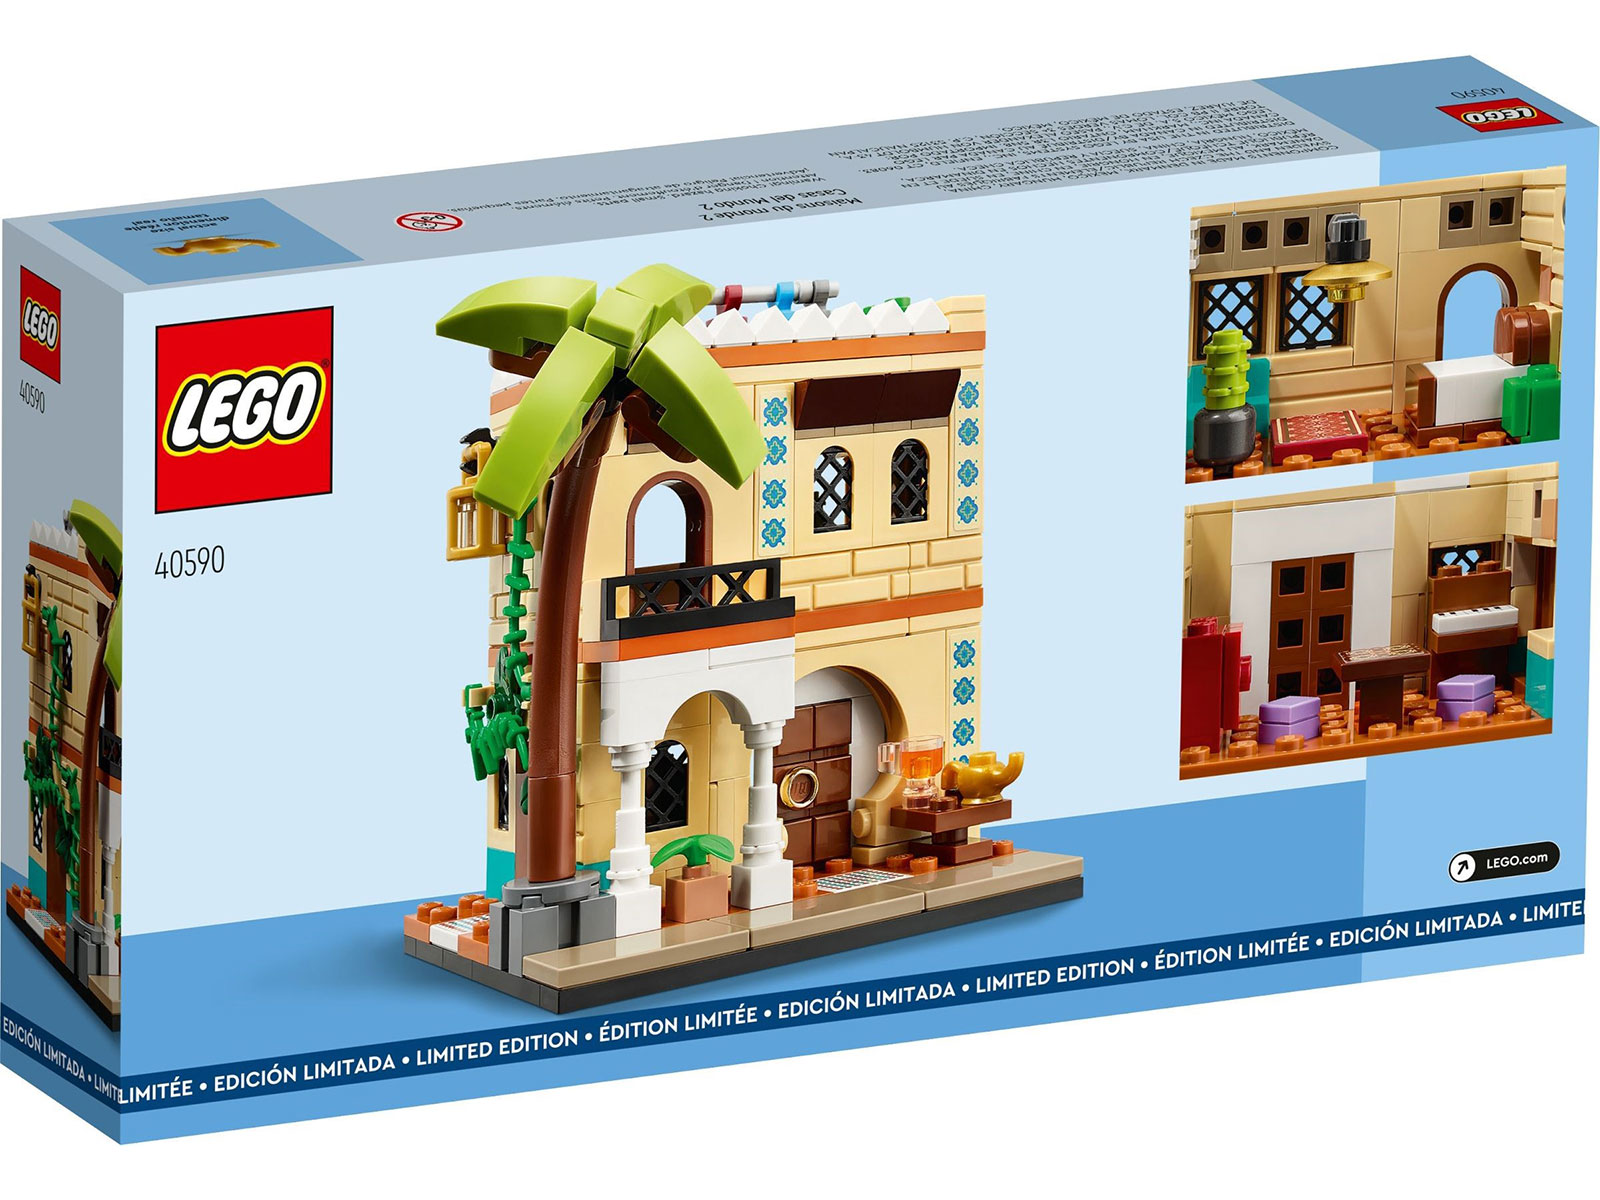 LEGO® 40590 - Häuser der Welt 2